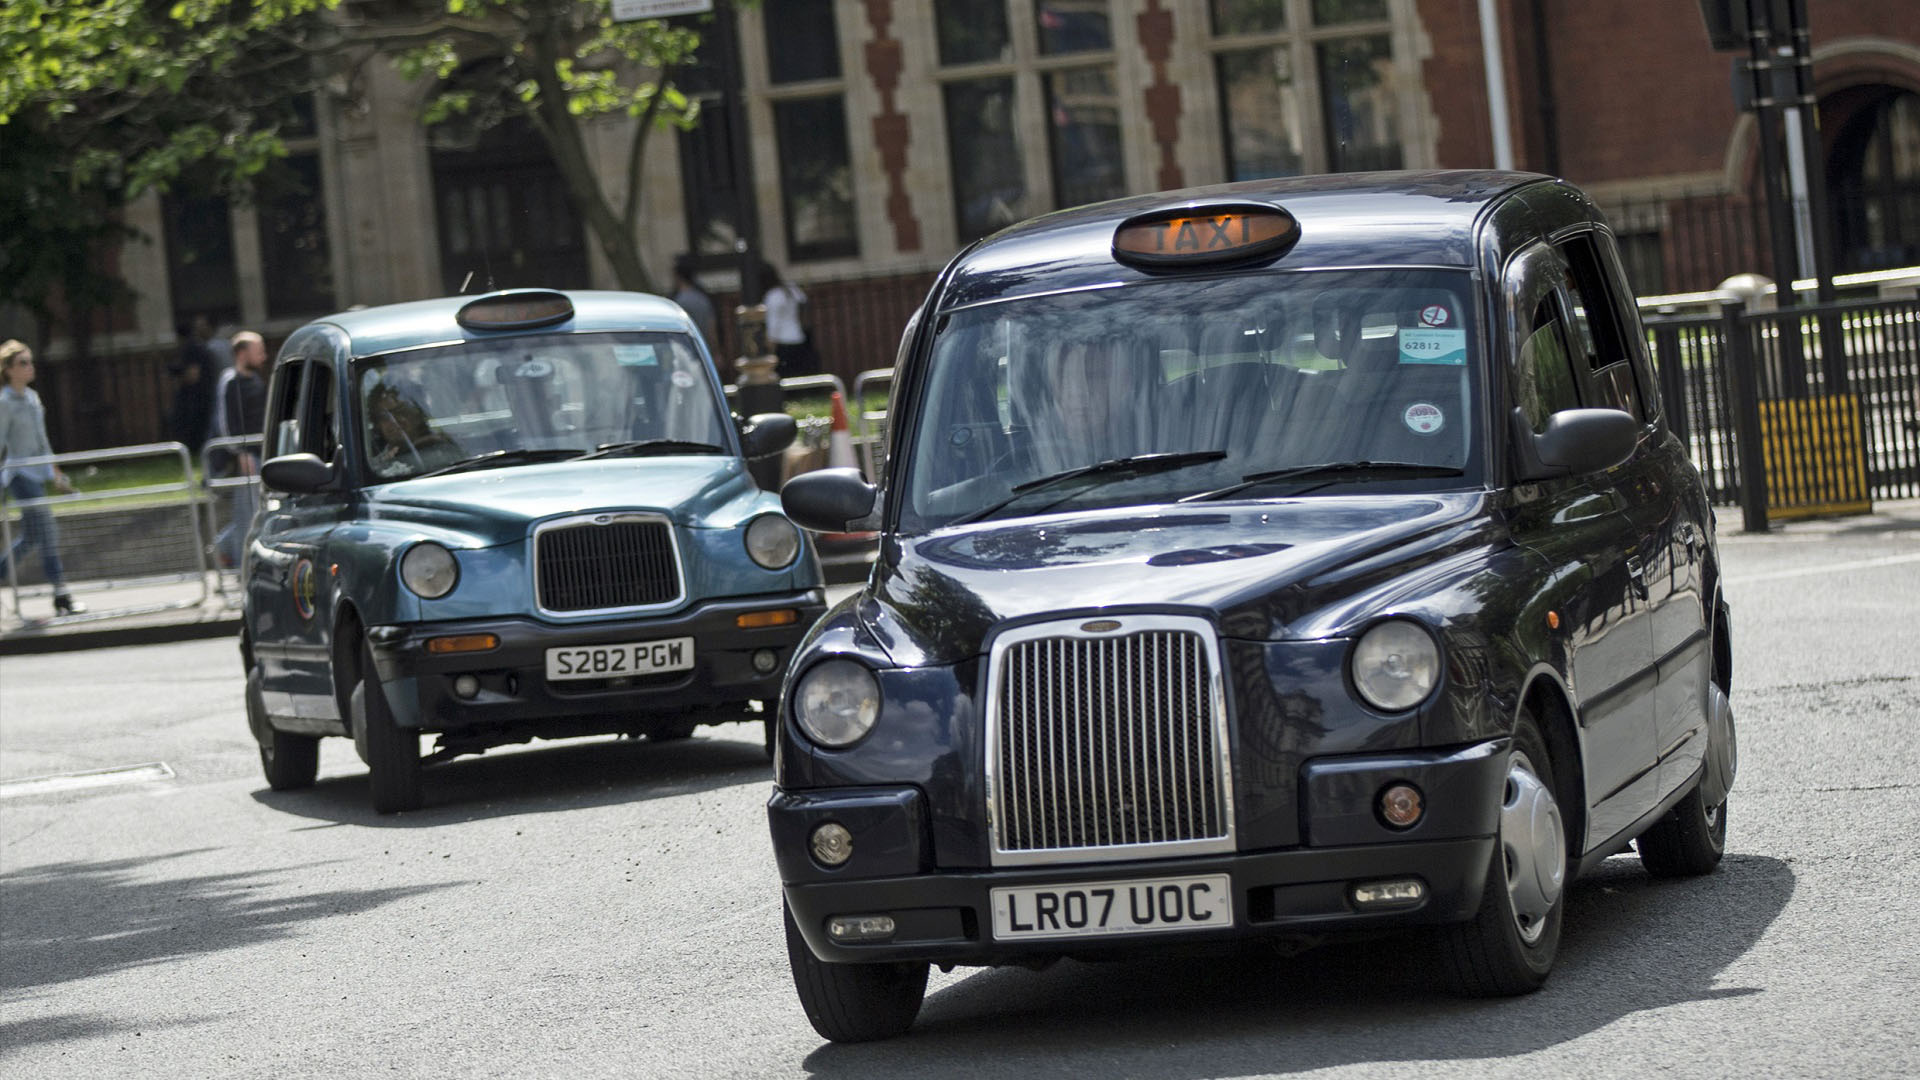 ТАКСИ, ПОВРЕЖДЕННЫЕ COVID’ом: Лицензированный лондонский таксопарк сократился более чем на 5000 машин за 1 год